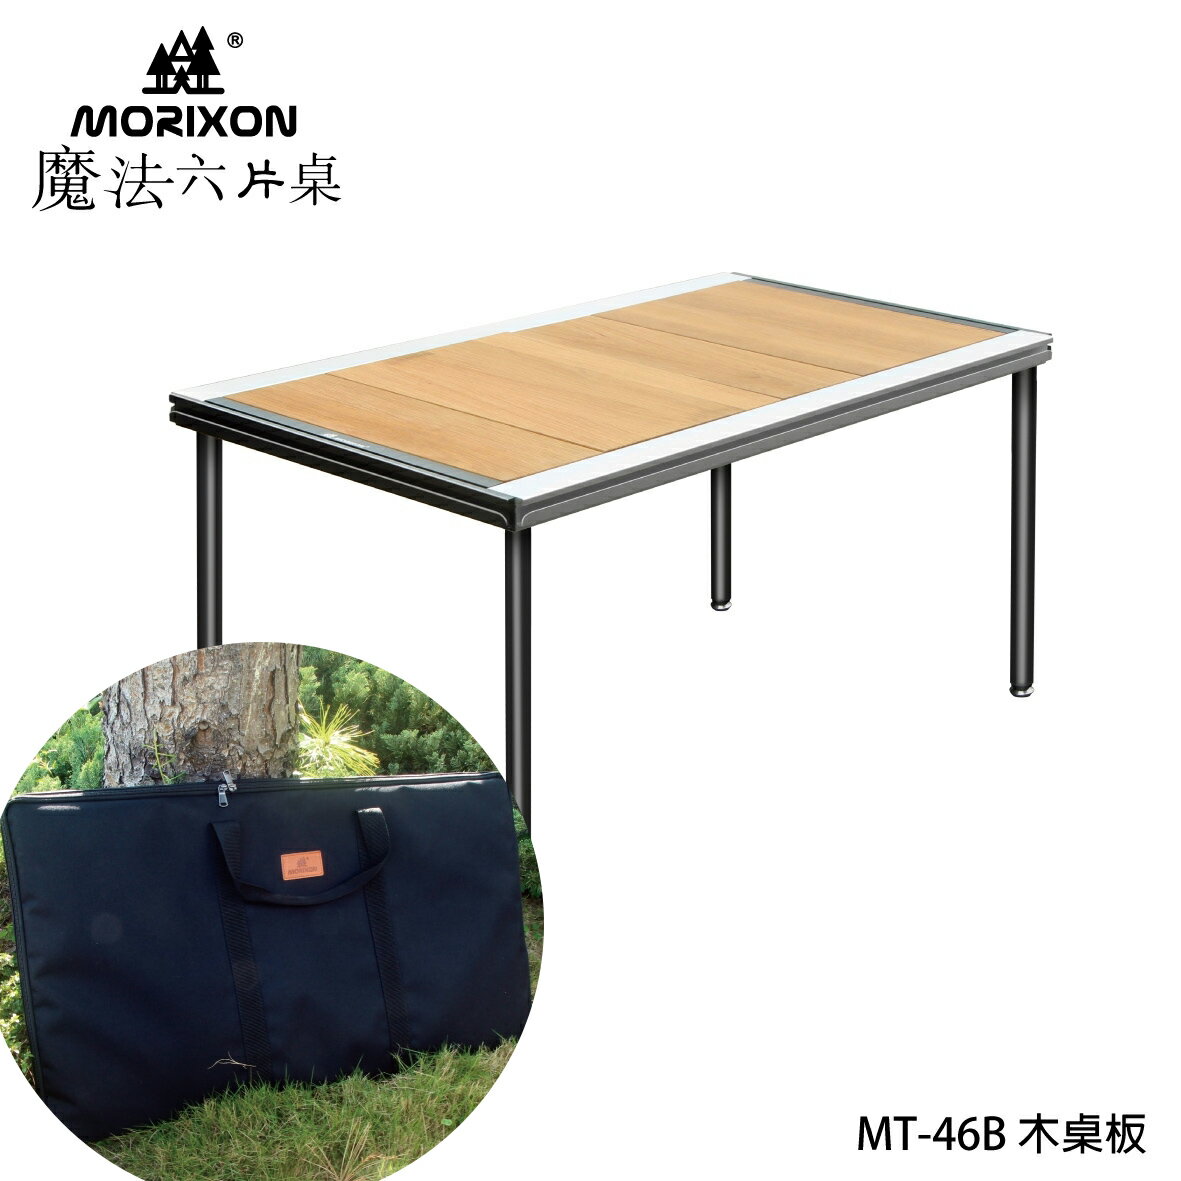 台灣專利【Morixon】魔法六片桌-紅橡木桌+攜行袋 MT-46-1B 系統桌 組合桌 露營桌 戶外桌